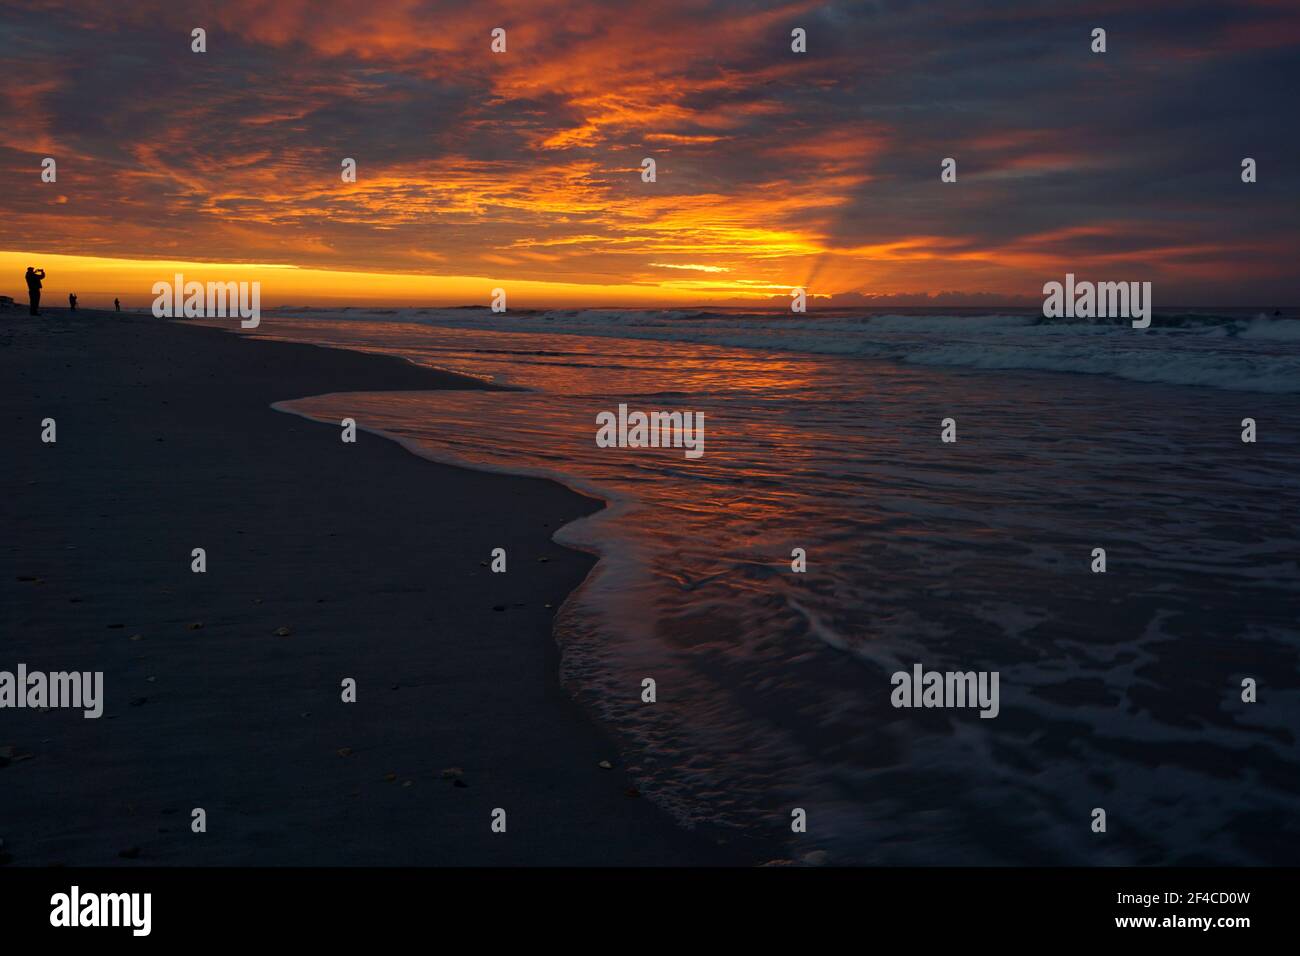 Sunrise over the ocean along the North Carolina Coast Stock Photo